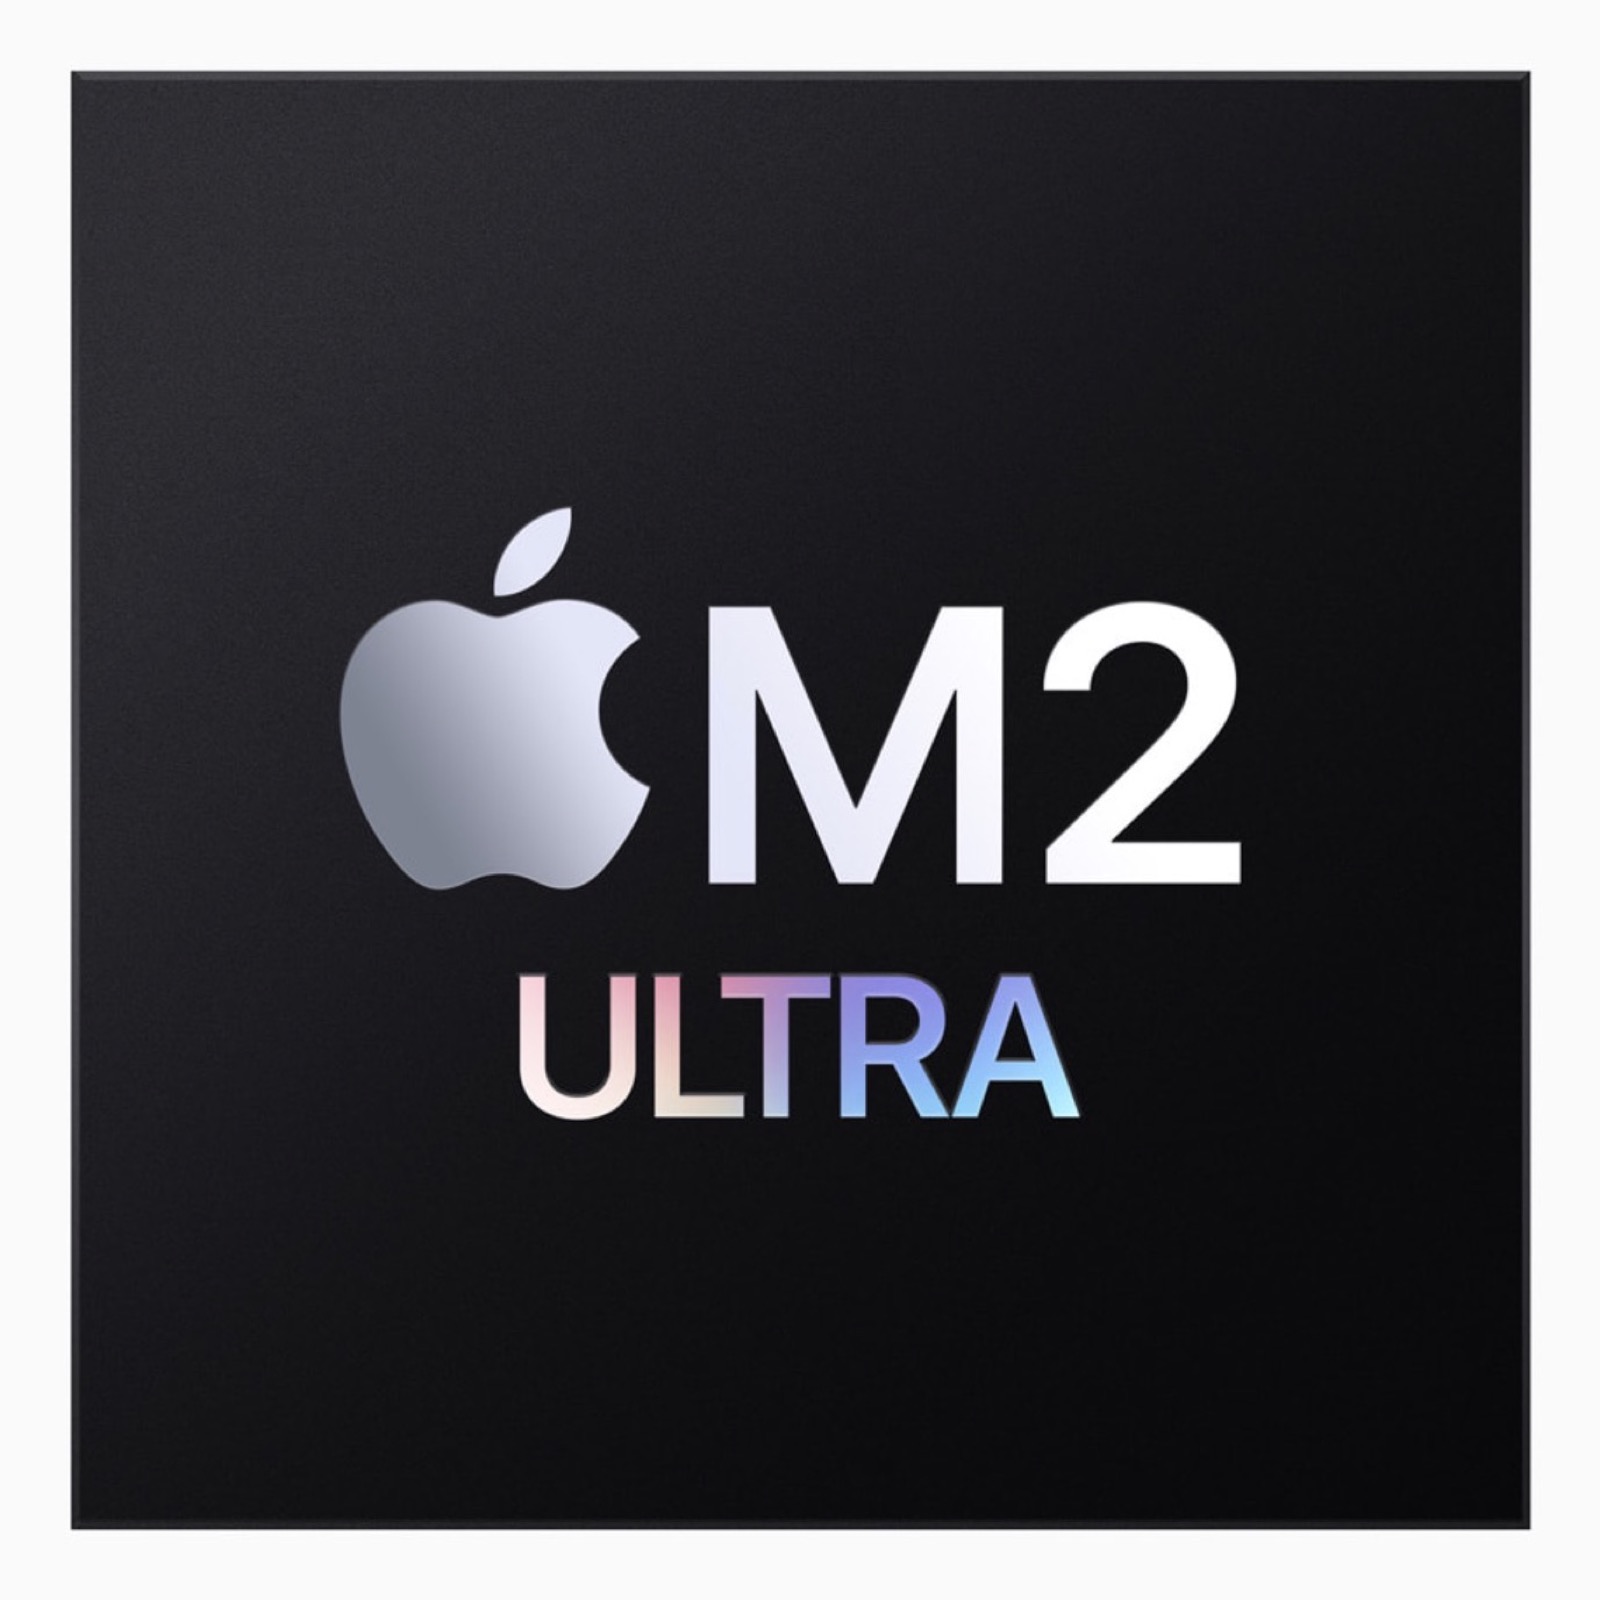 Mac Studio agli steroidi, arriva il chip M2 Ultra